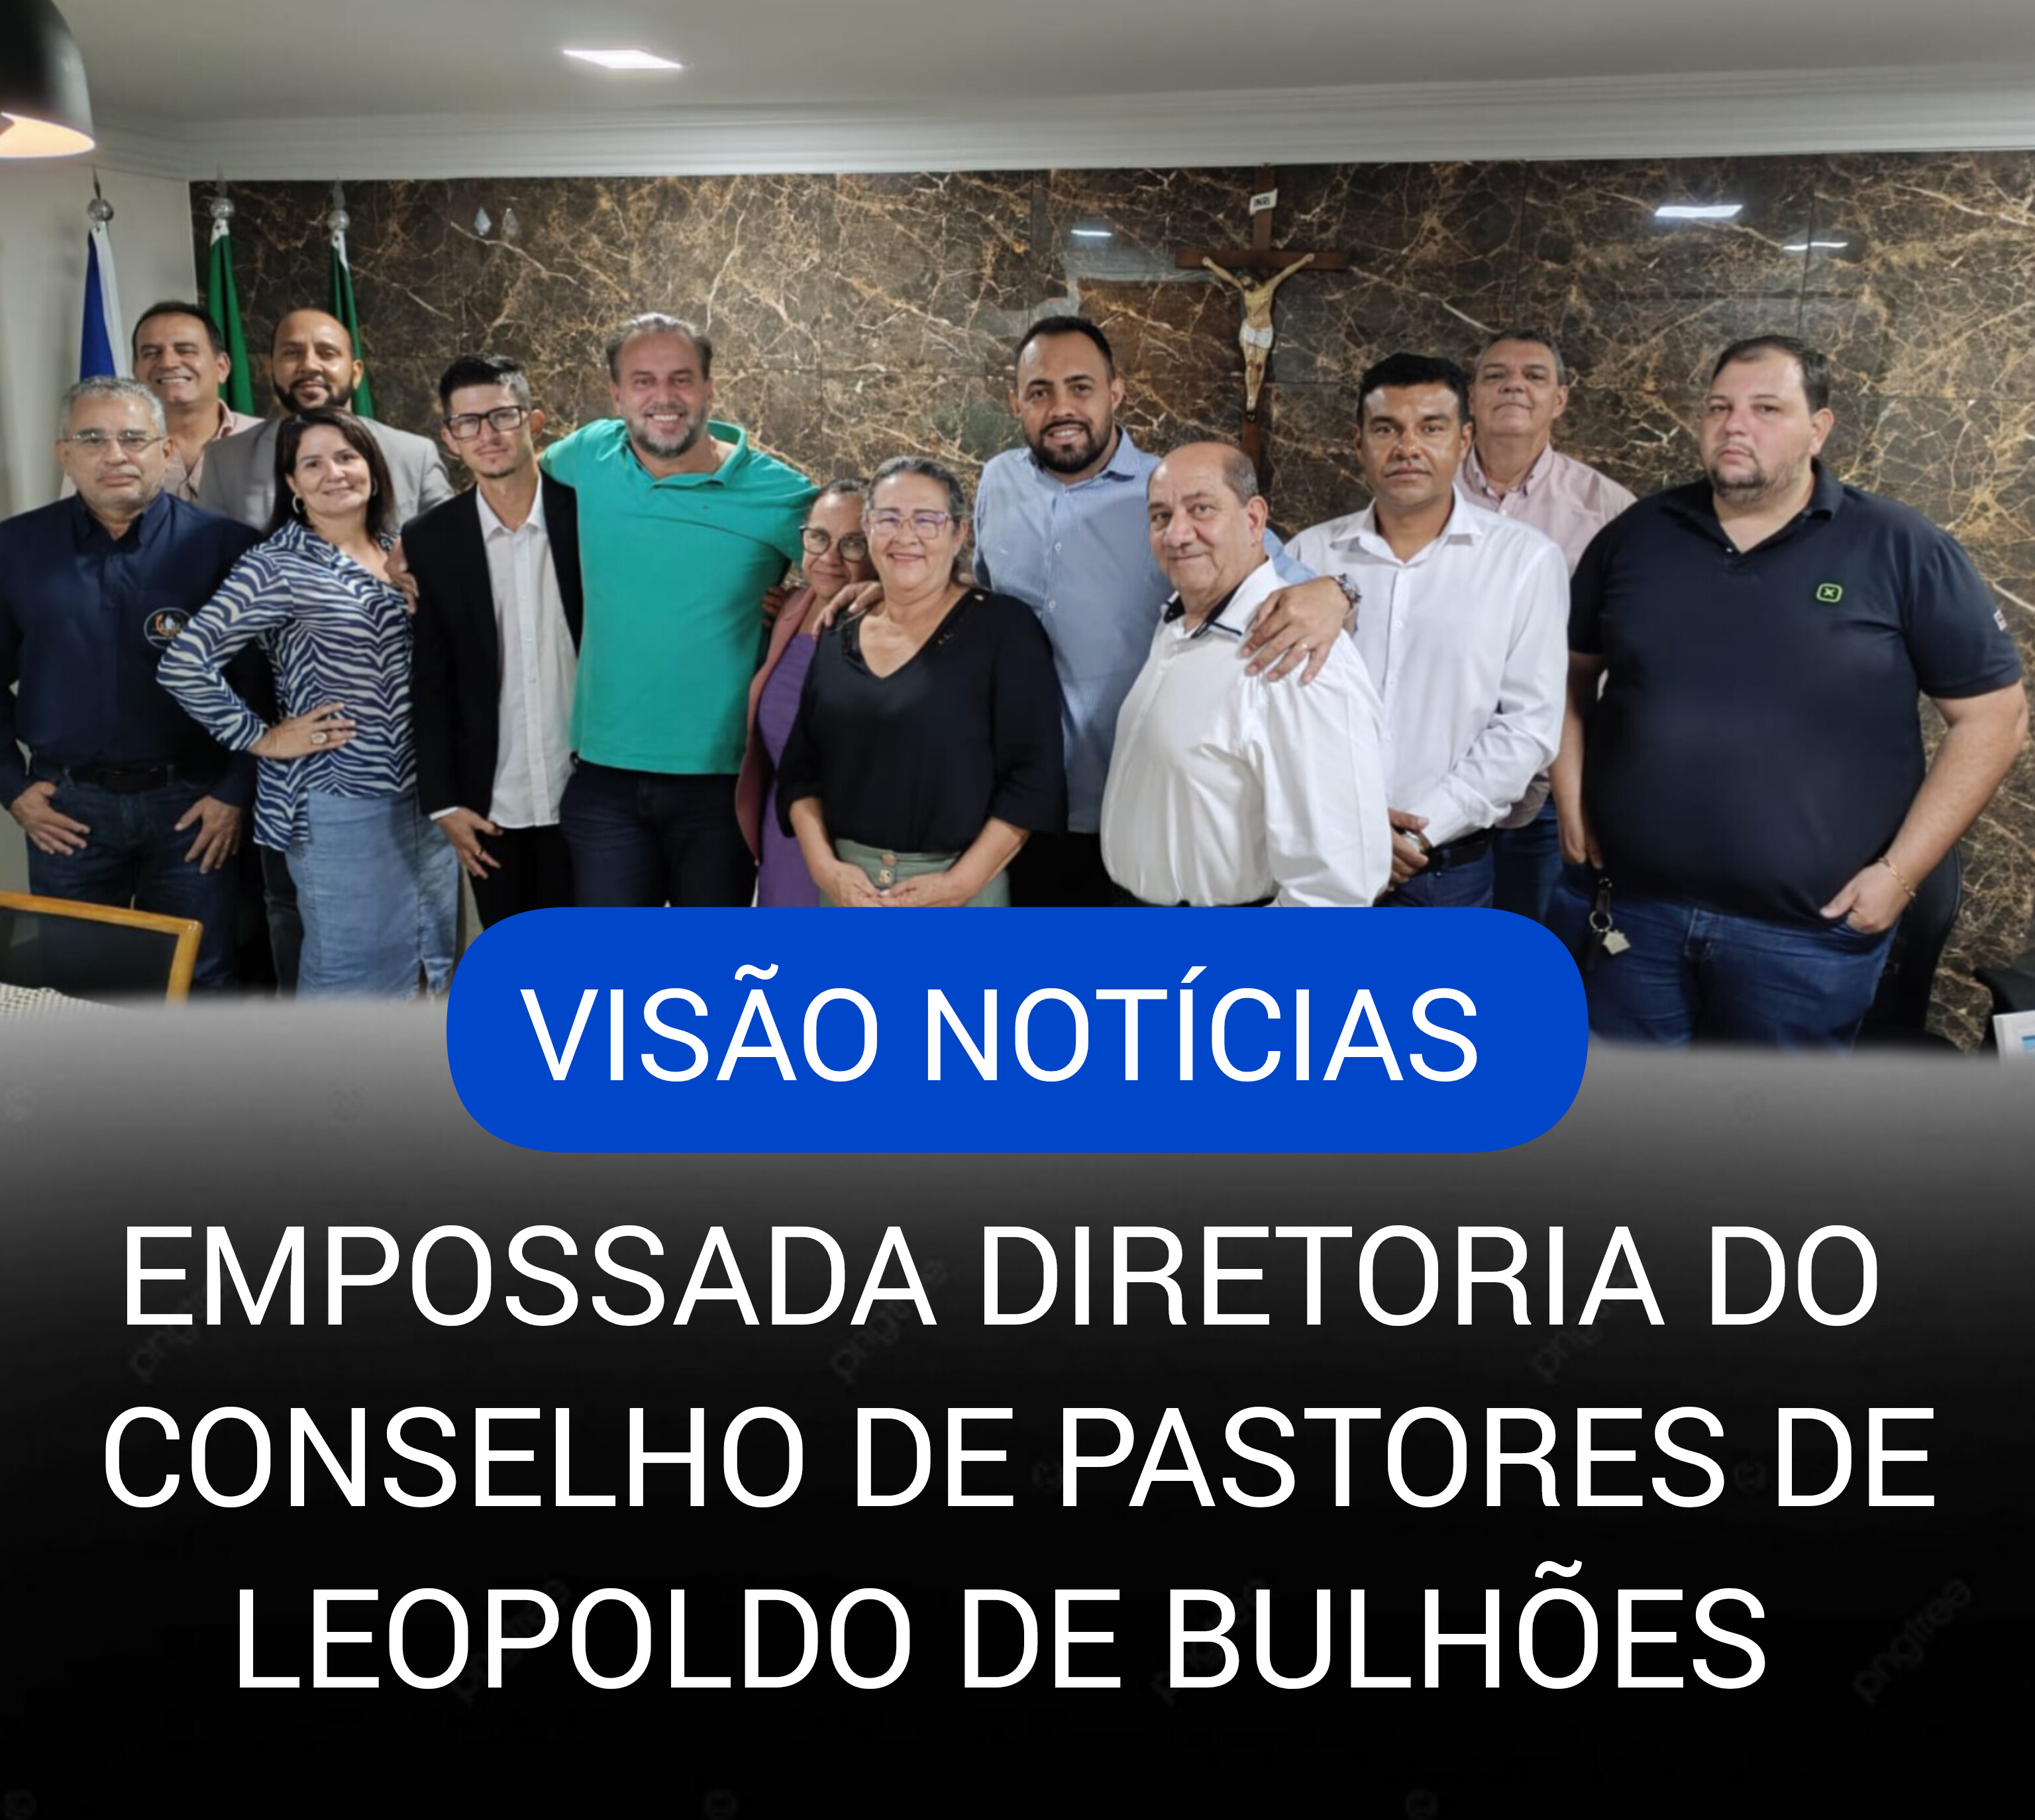 ​EMPOSSADA DIRETORIA DO CONSELHO DE PASTORES DE LEOPOLDO DE BULHÕES